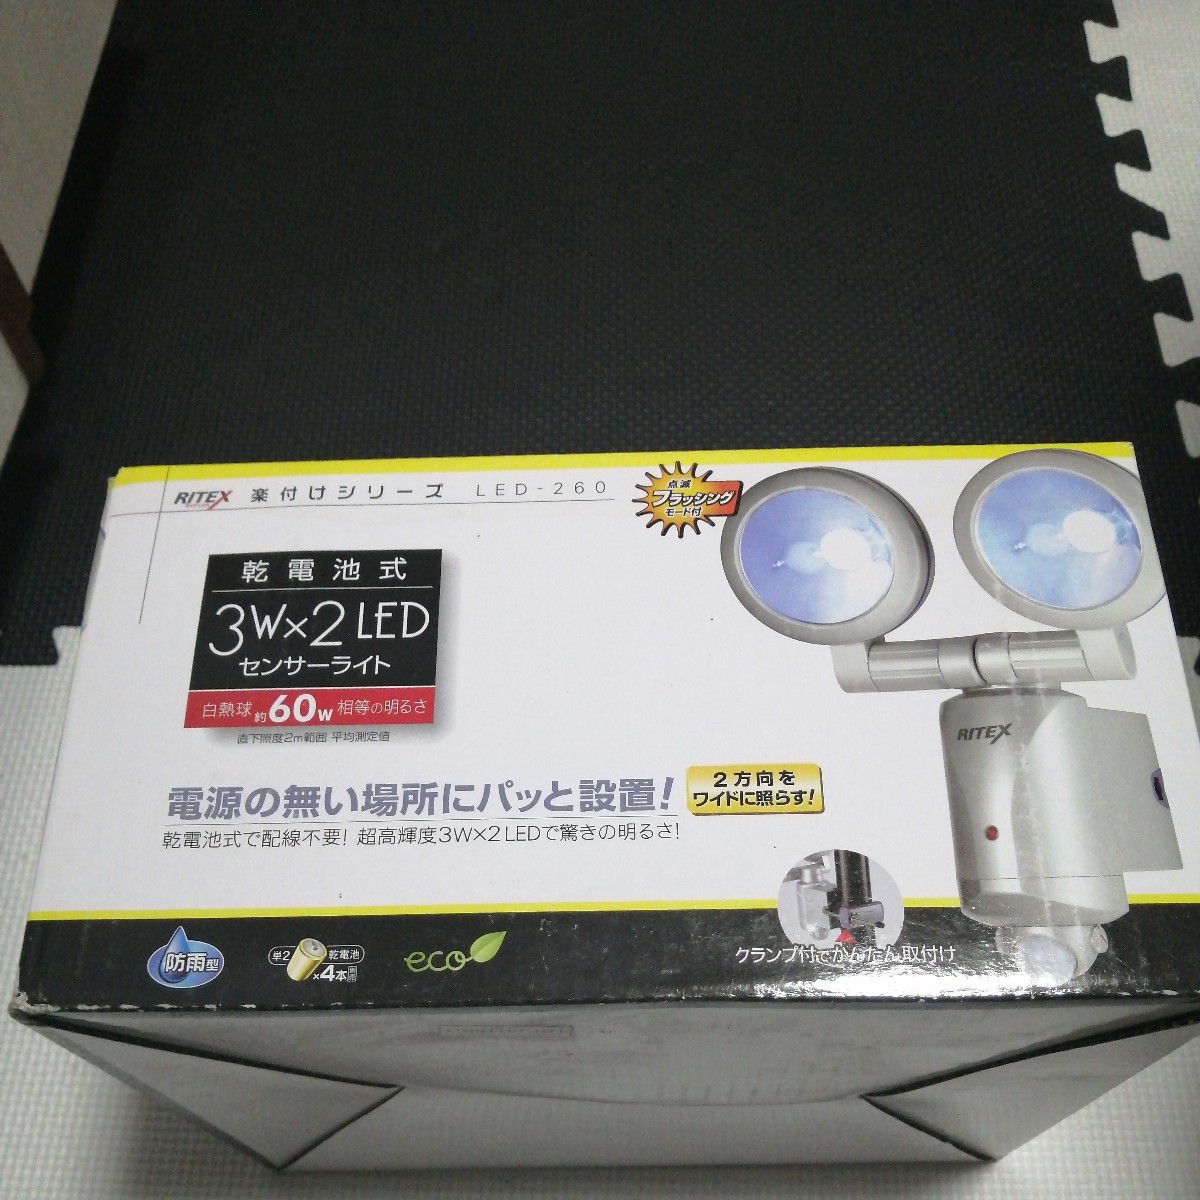 ムサシ RITEX 3W2 LEDセンサーライト 「乾電池式」 防雨タイプ LED-260_画像1